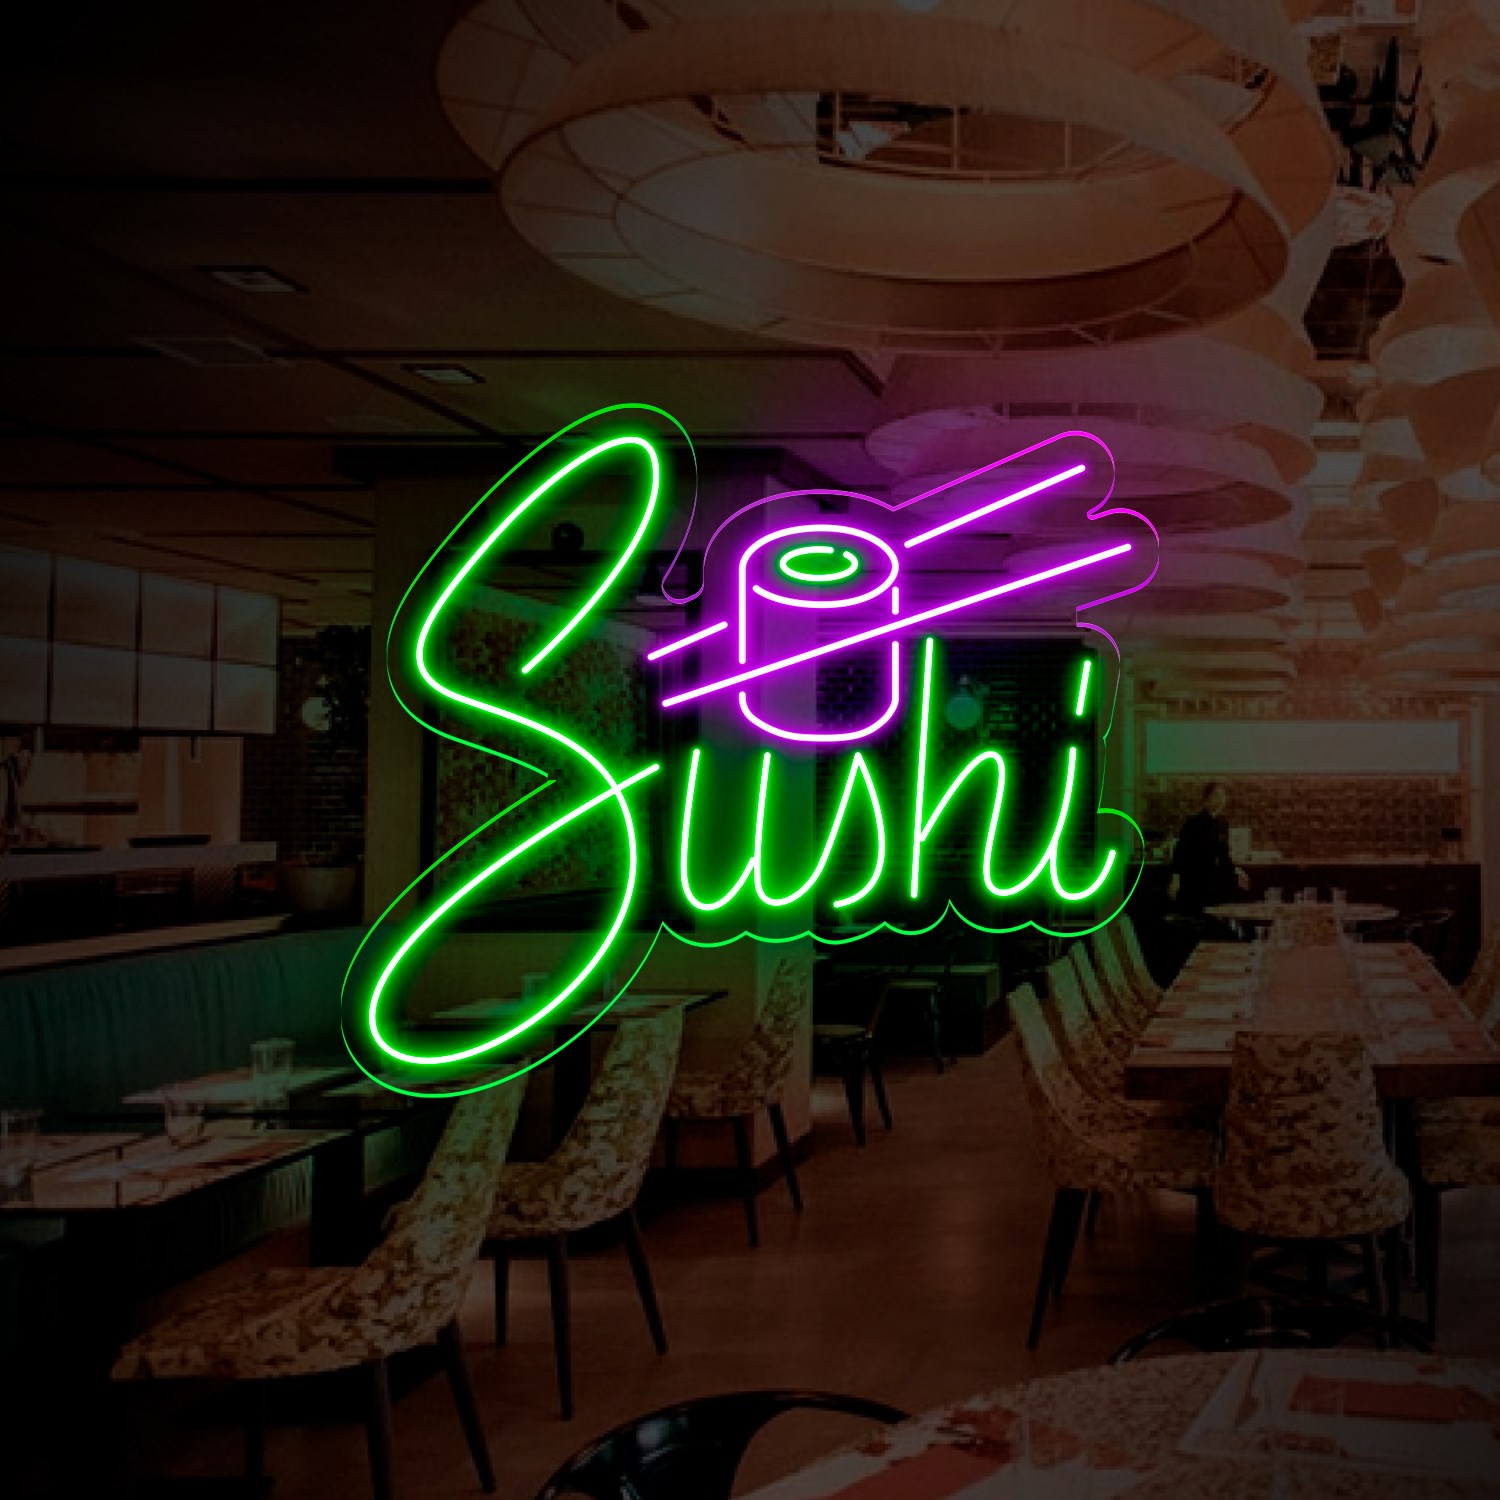 Immagine di Neon per ristorante "Sushi"